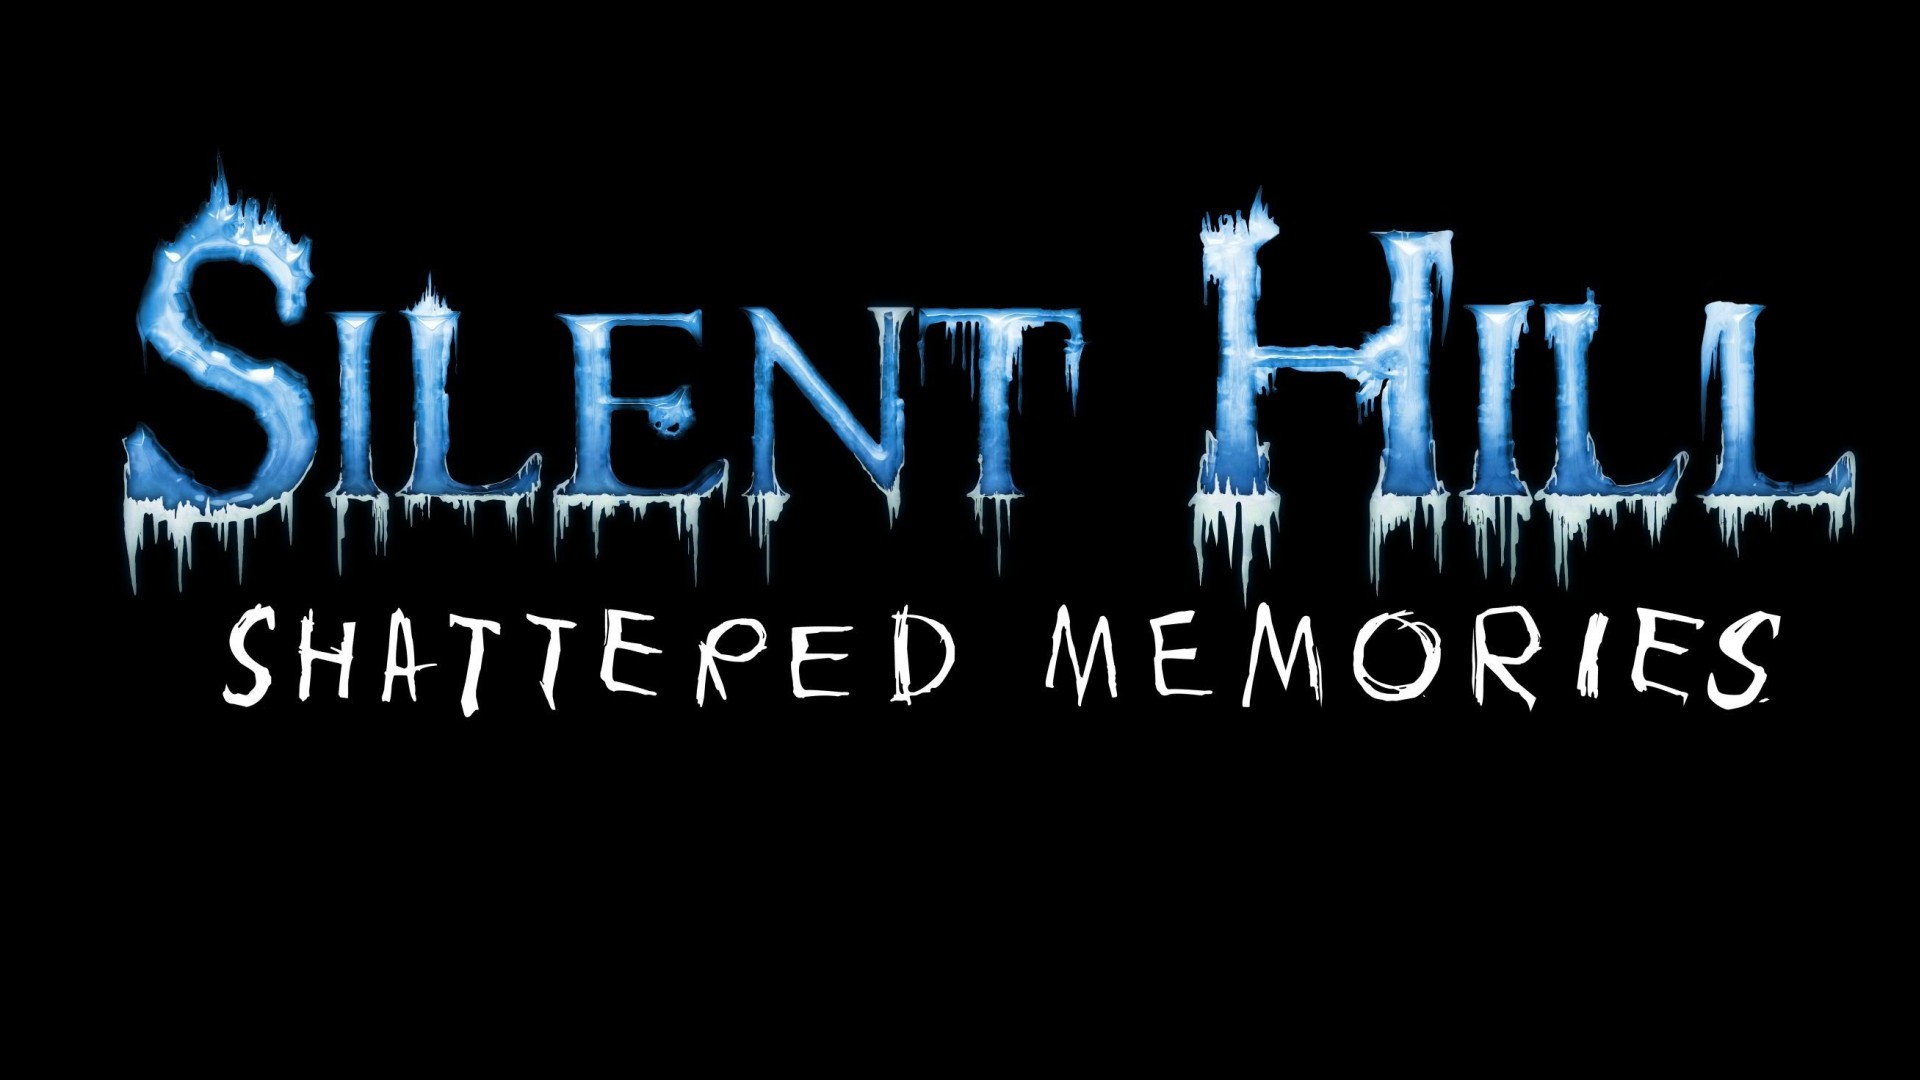 Descarga gratuita de fondo de pantalla para móvil de Silent Hill, Videojuego, Silent Hill: Shattered Memories.